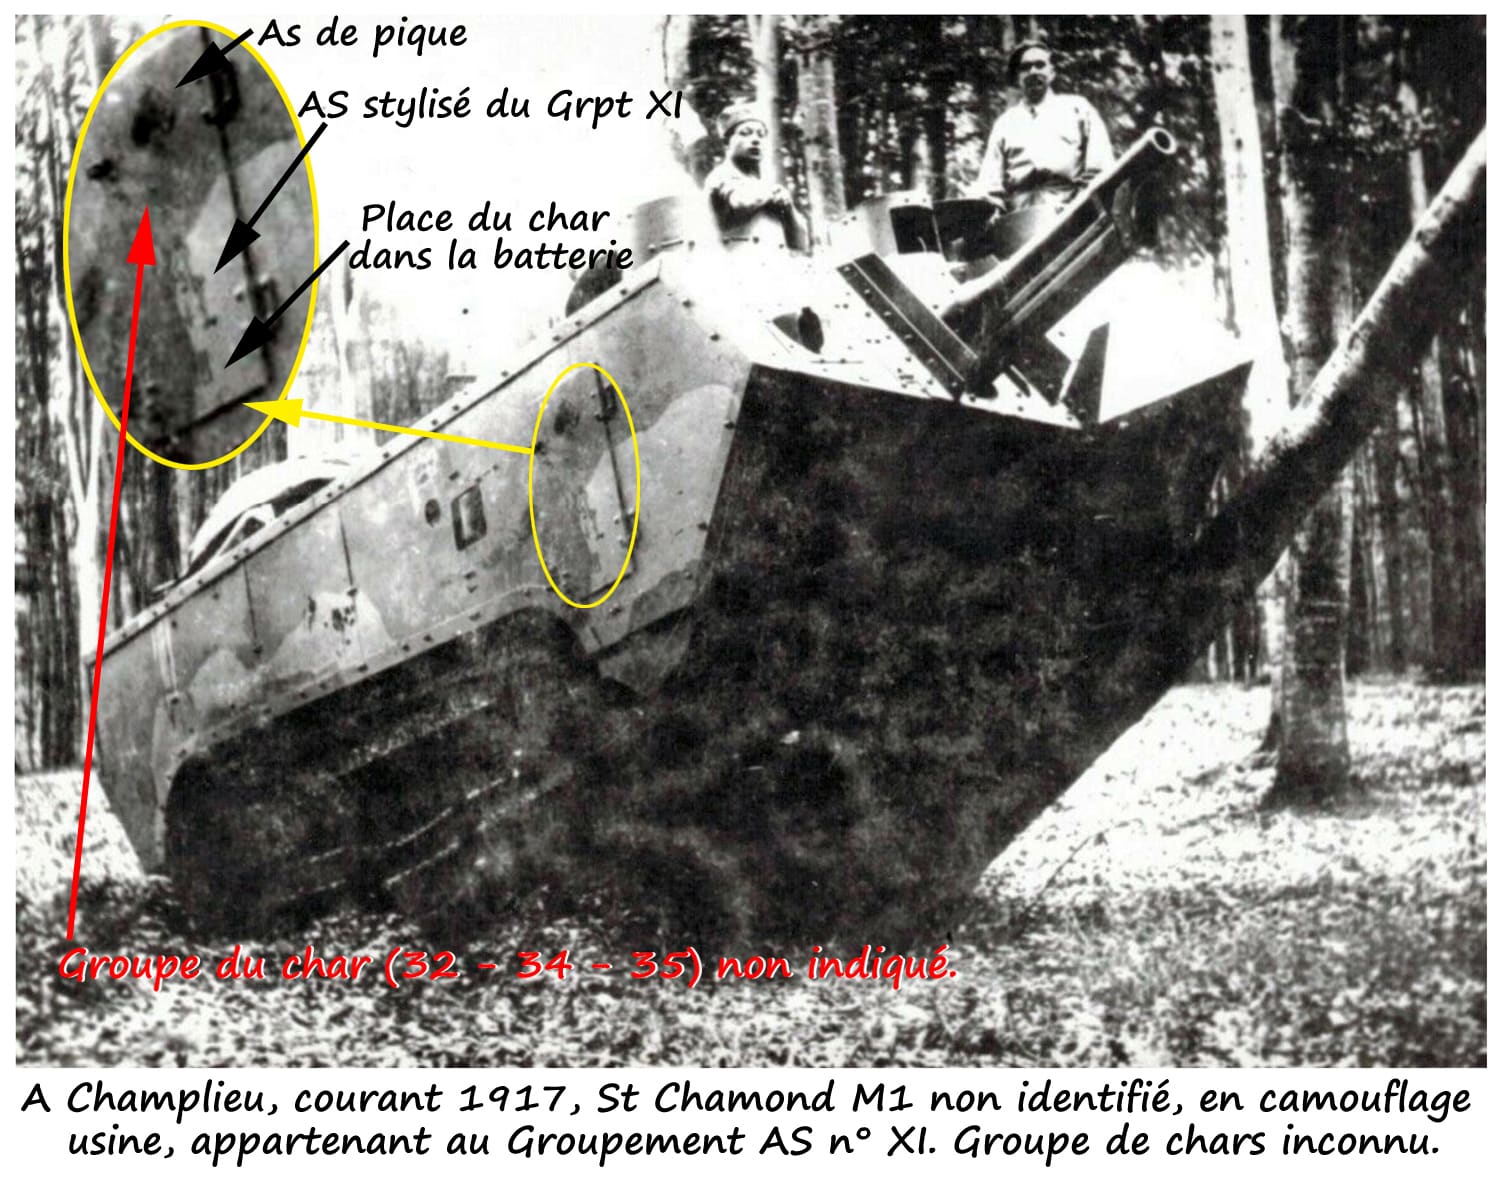 Grpt XI - AS 3x - Saint Chamond M1 AsPx n° 62xxx (01a)-min.jpg